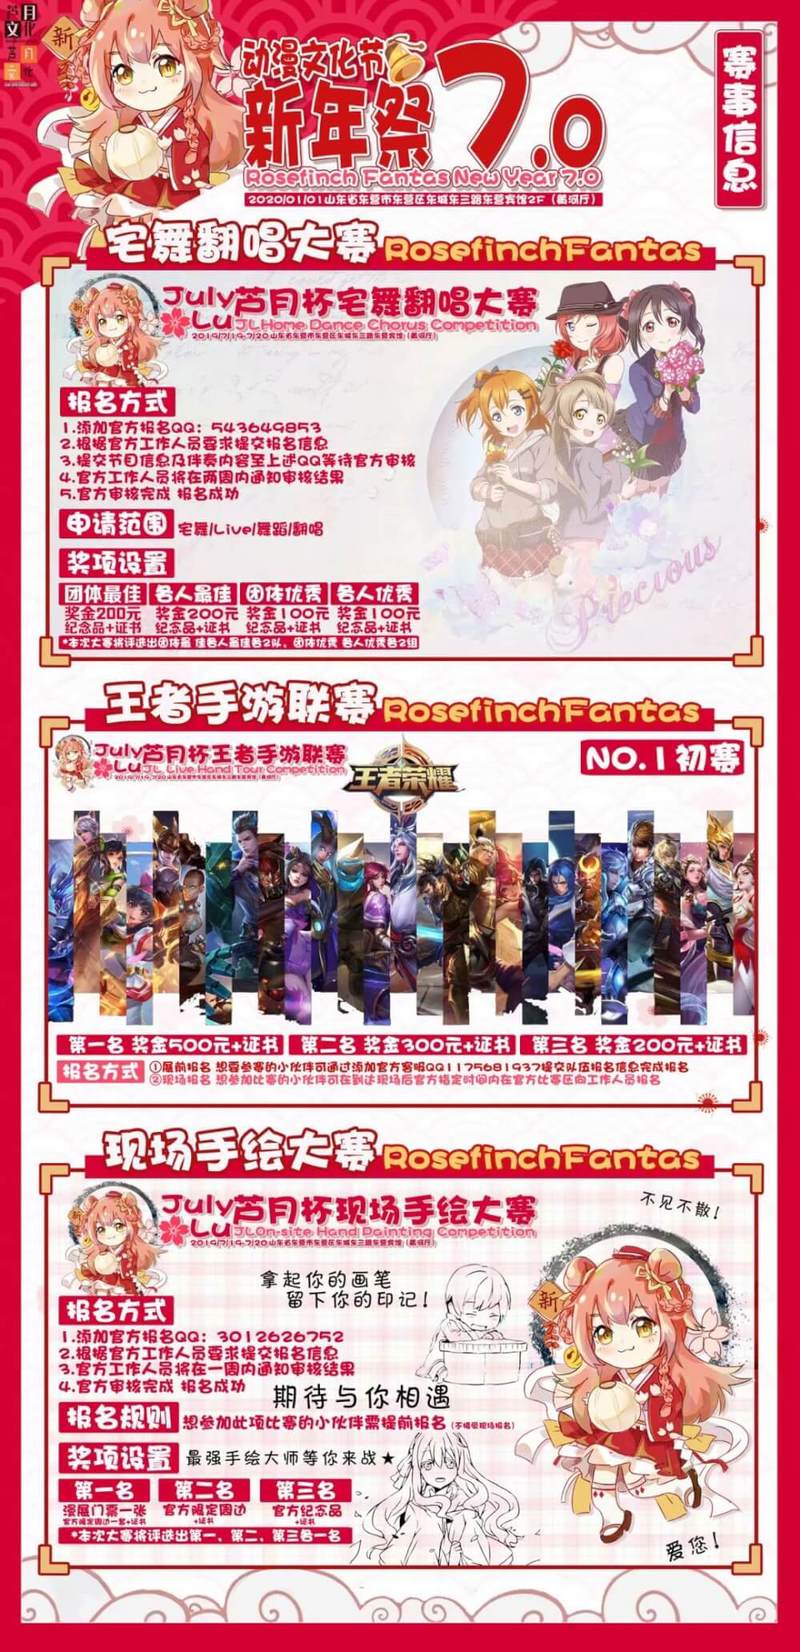 【三宣 】东营RF新年祭7.0现场活动大揭秘-C3动漫网